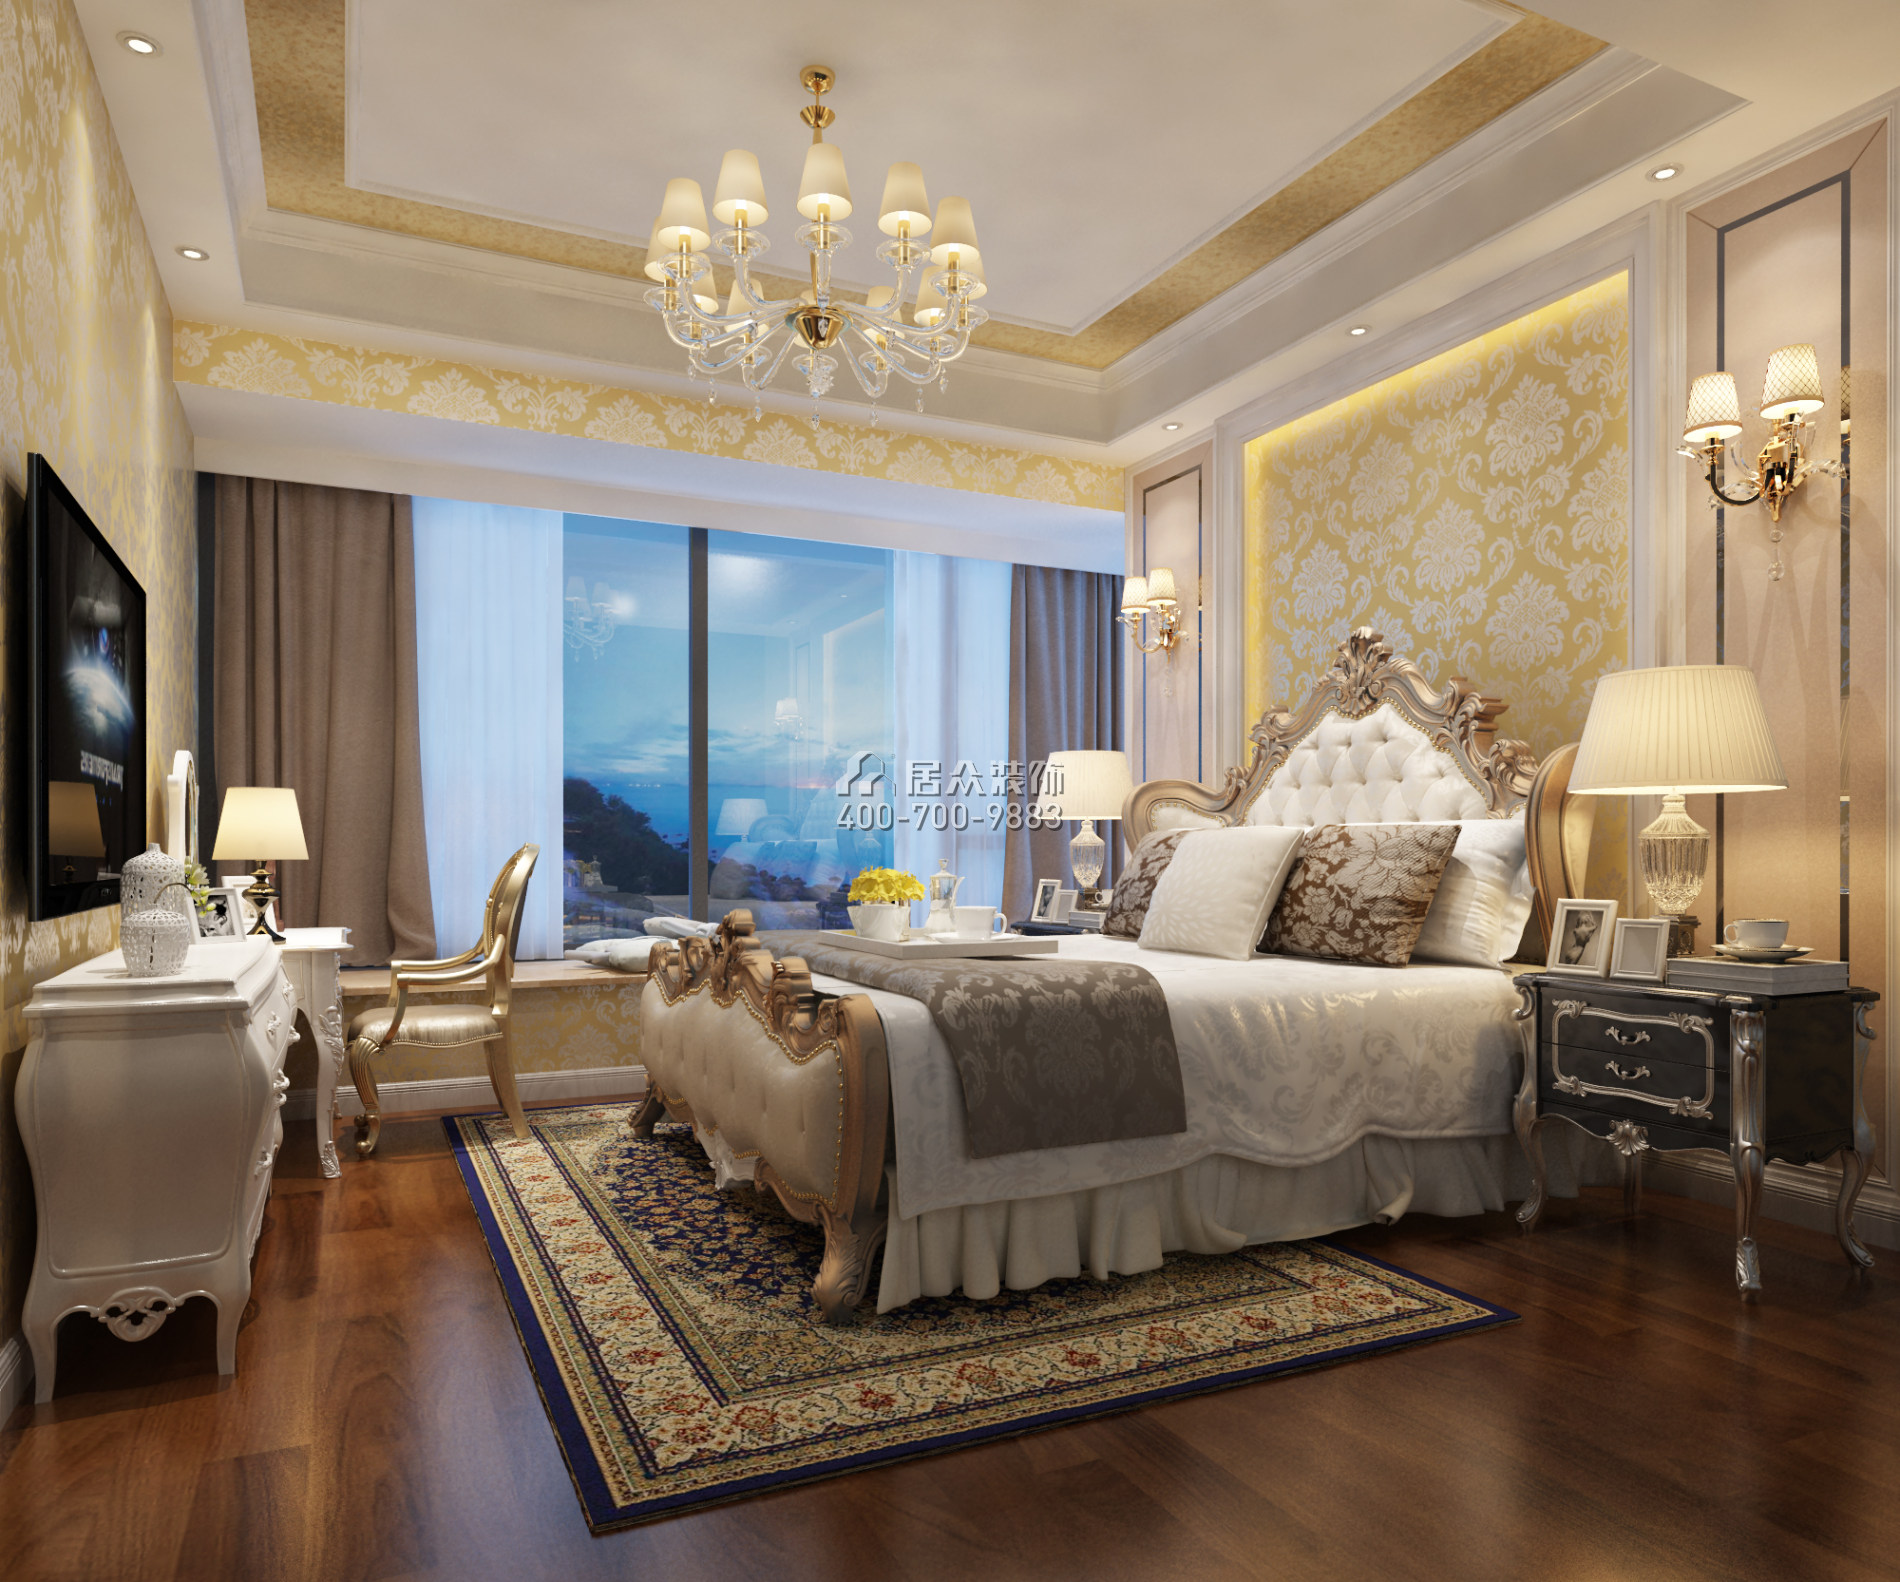 信义荔山御园143平方米欧式风格平层户型卧室装修效果图